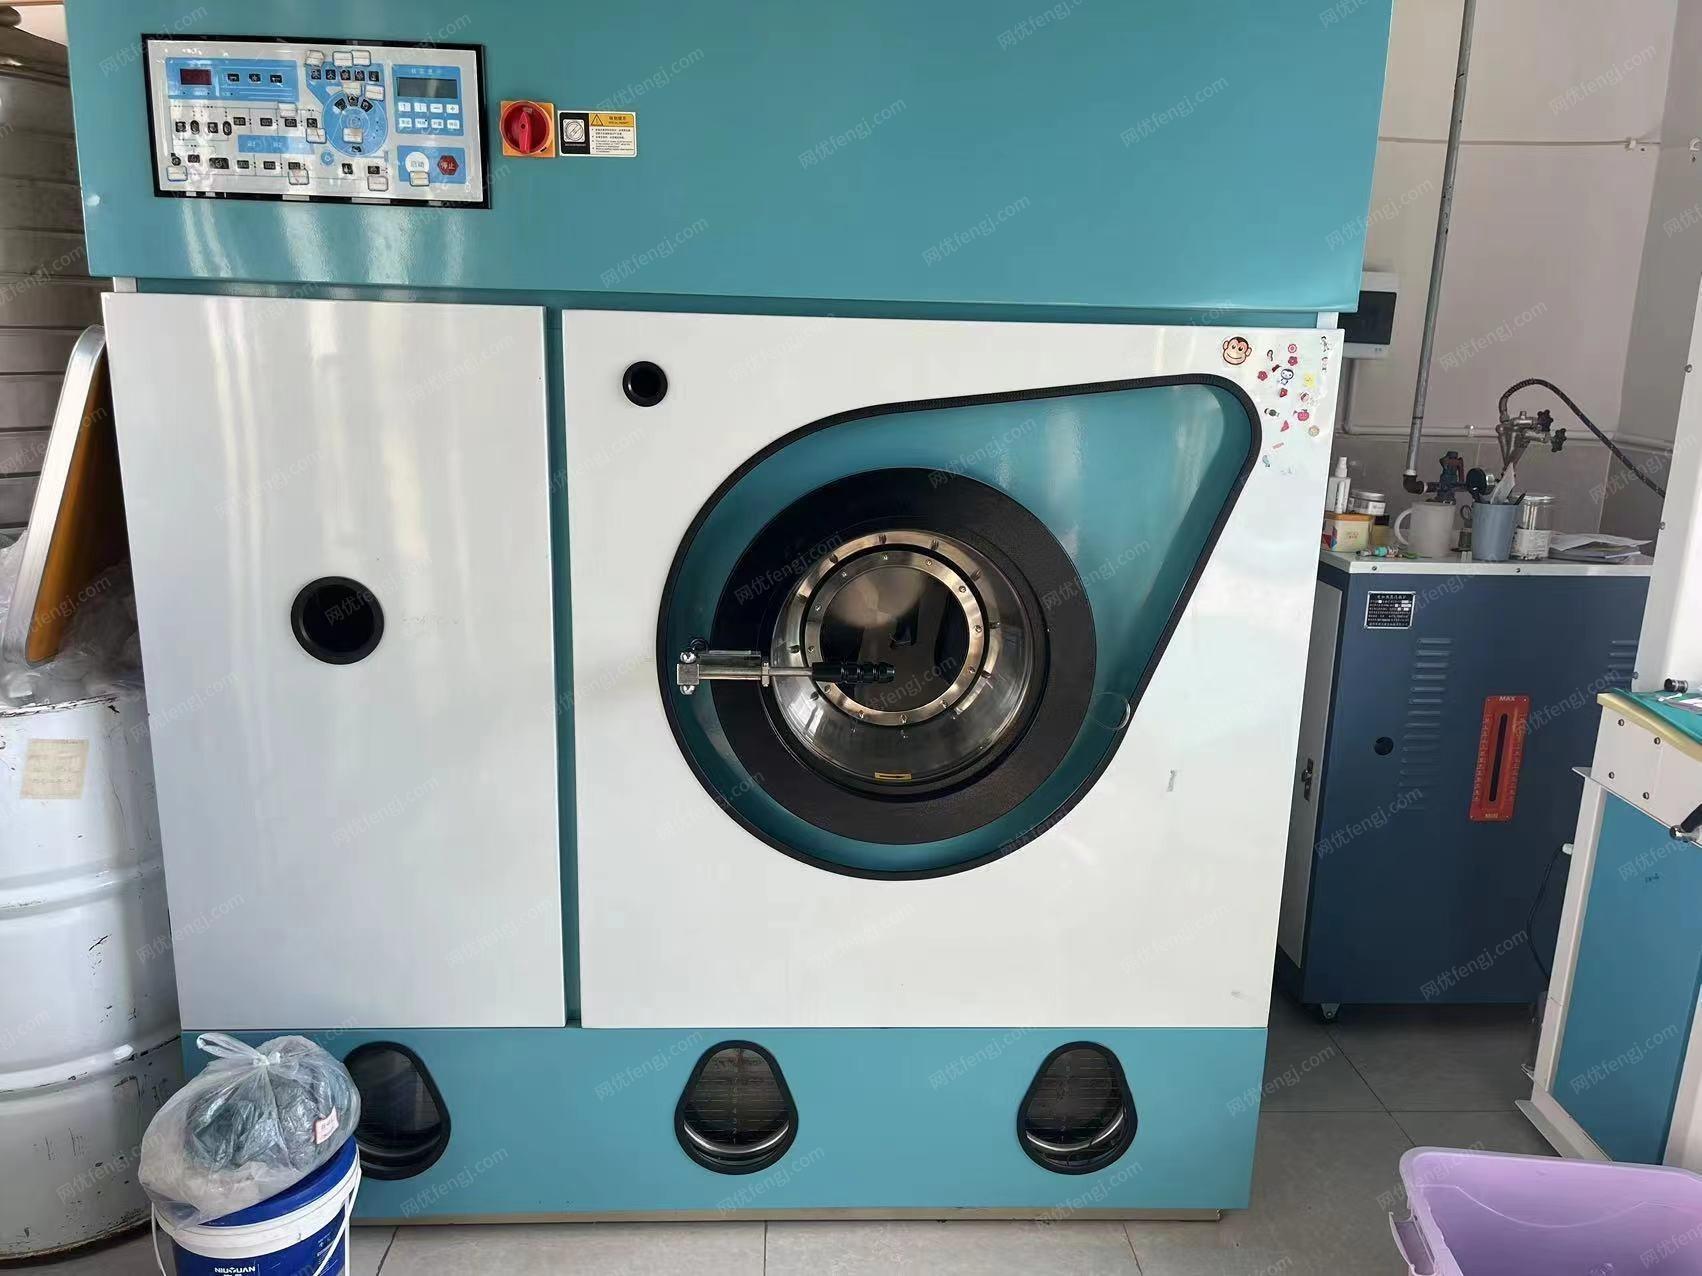 干洗店处理干洗生产线(干洗机,水洗机 , 烫台 烘干机)包装机,处理价8万多